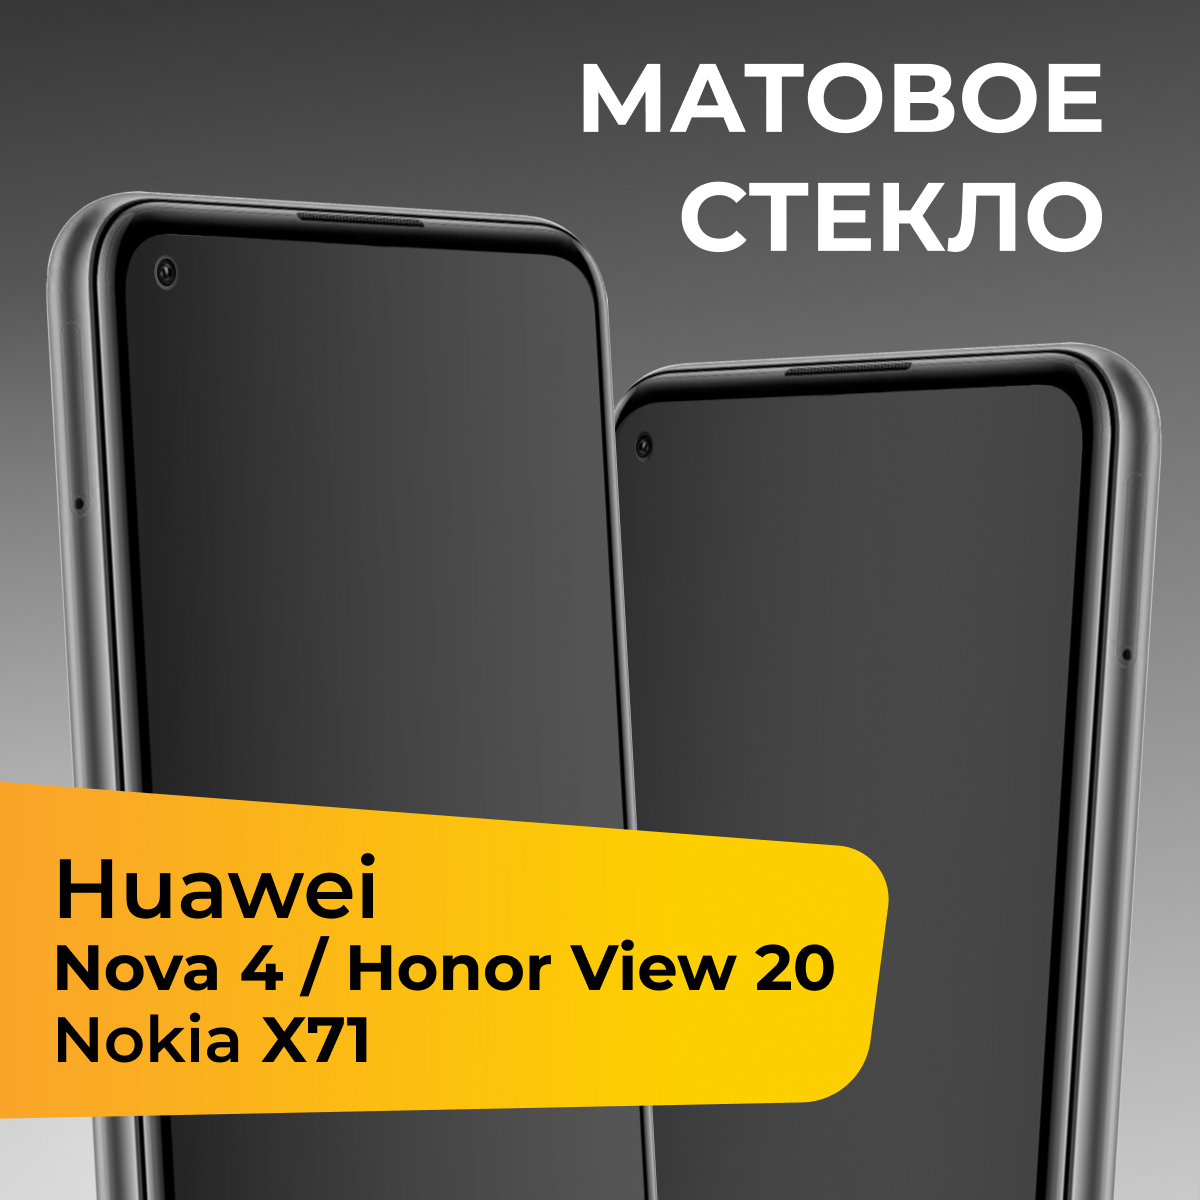 Матовое защитное стекло с полным покрытием экрана для смартфона Huawei Nova 4, Honor View 20 и Nokia X71 / Хуавей Нова 4, Хонор Вив 20 и Нокиа Х71